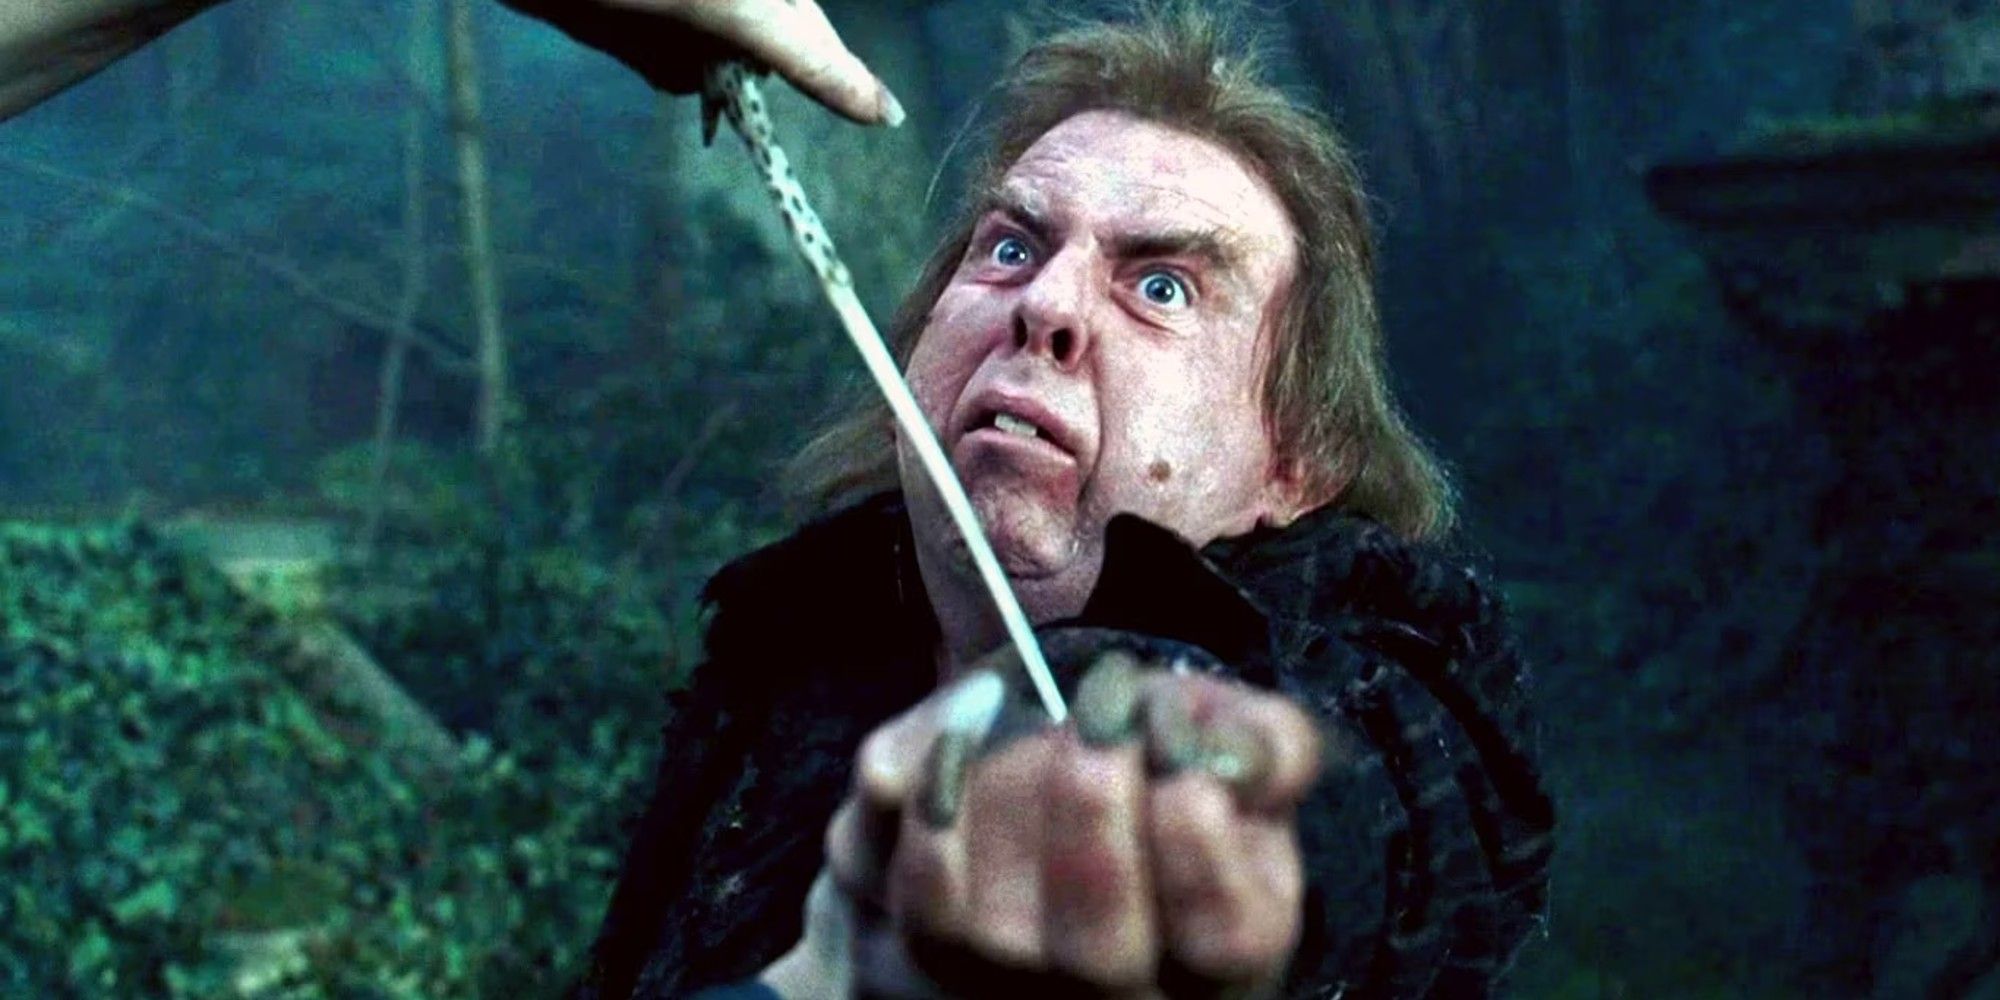 Peter Pettigrew em Harry Potter parece assustado com uma varinha apontada para o pulso